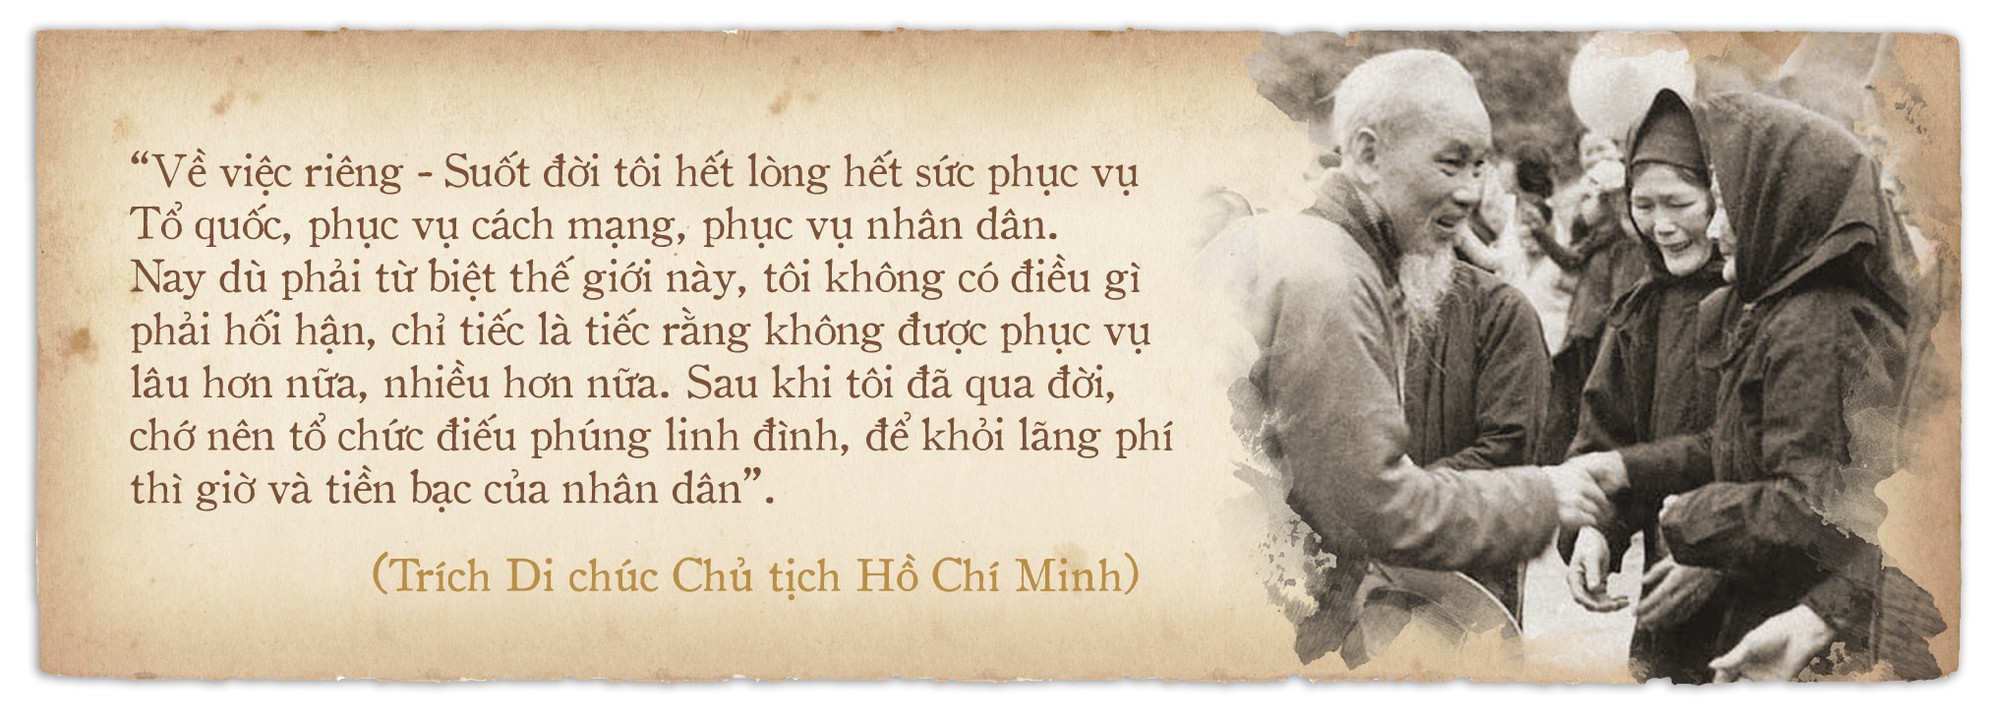 Di chúc của Chủ tịch Hồ Chí Minh: Như ngọn đuốc soi đường cho dân tộc - Ảnh 5.